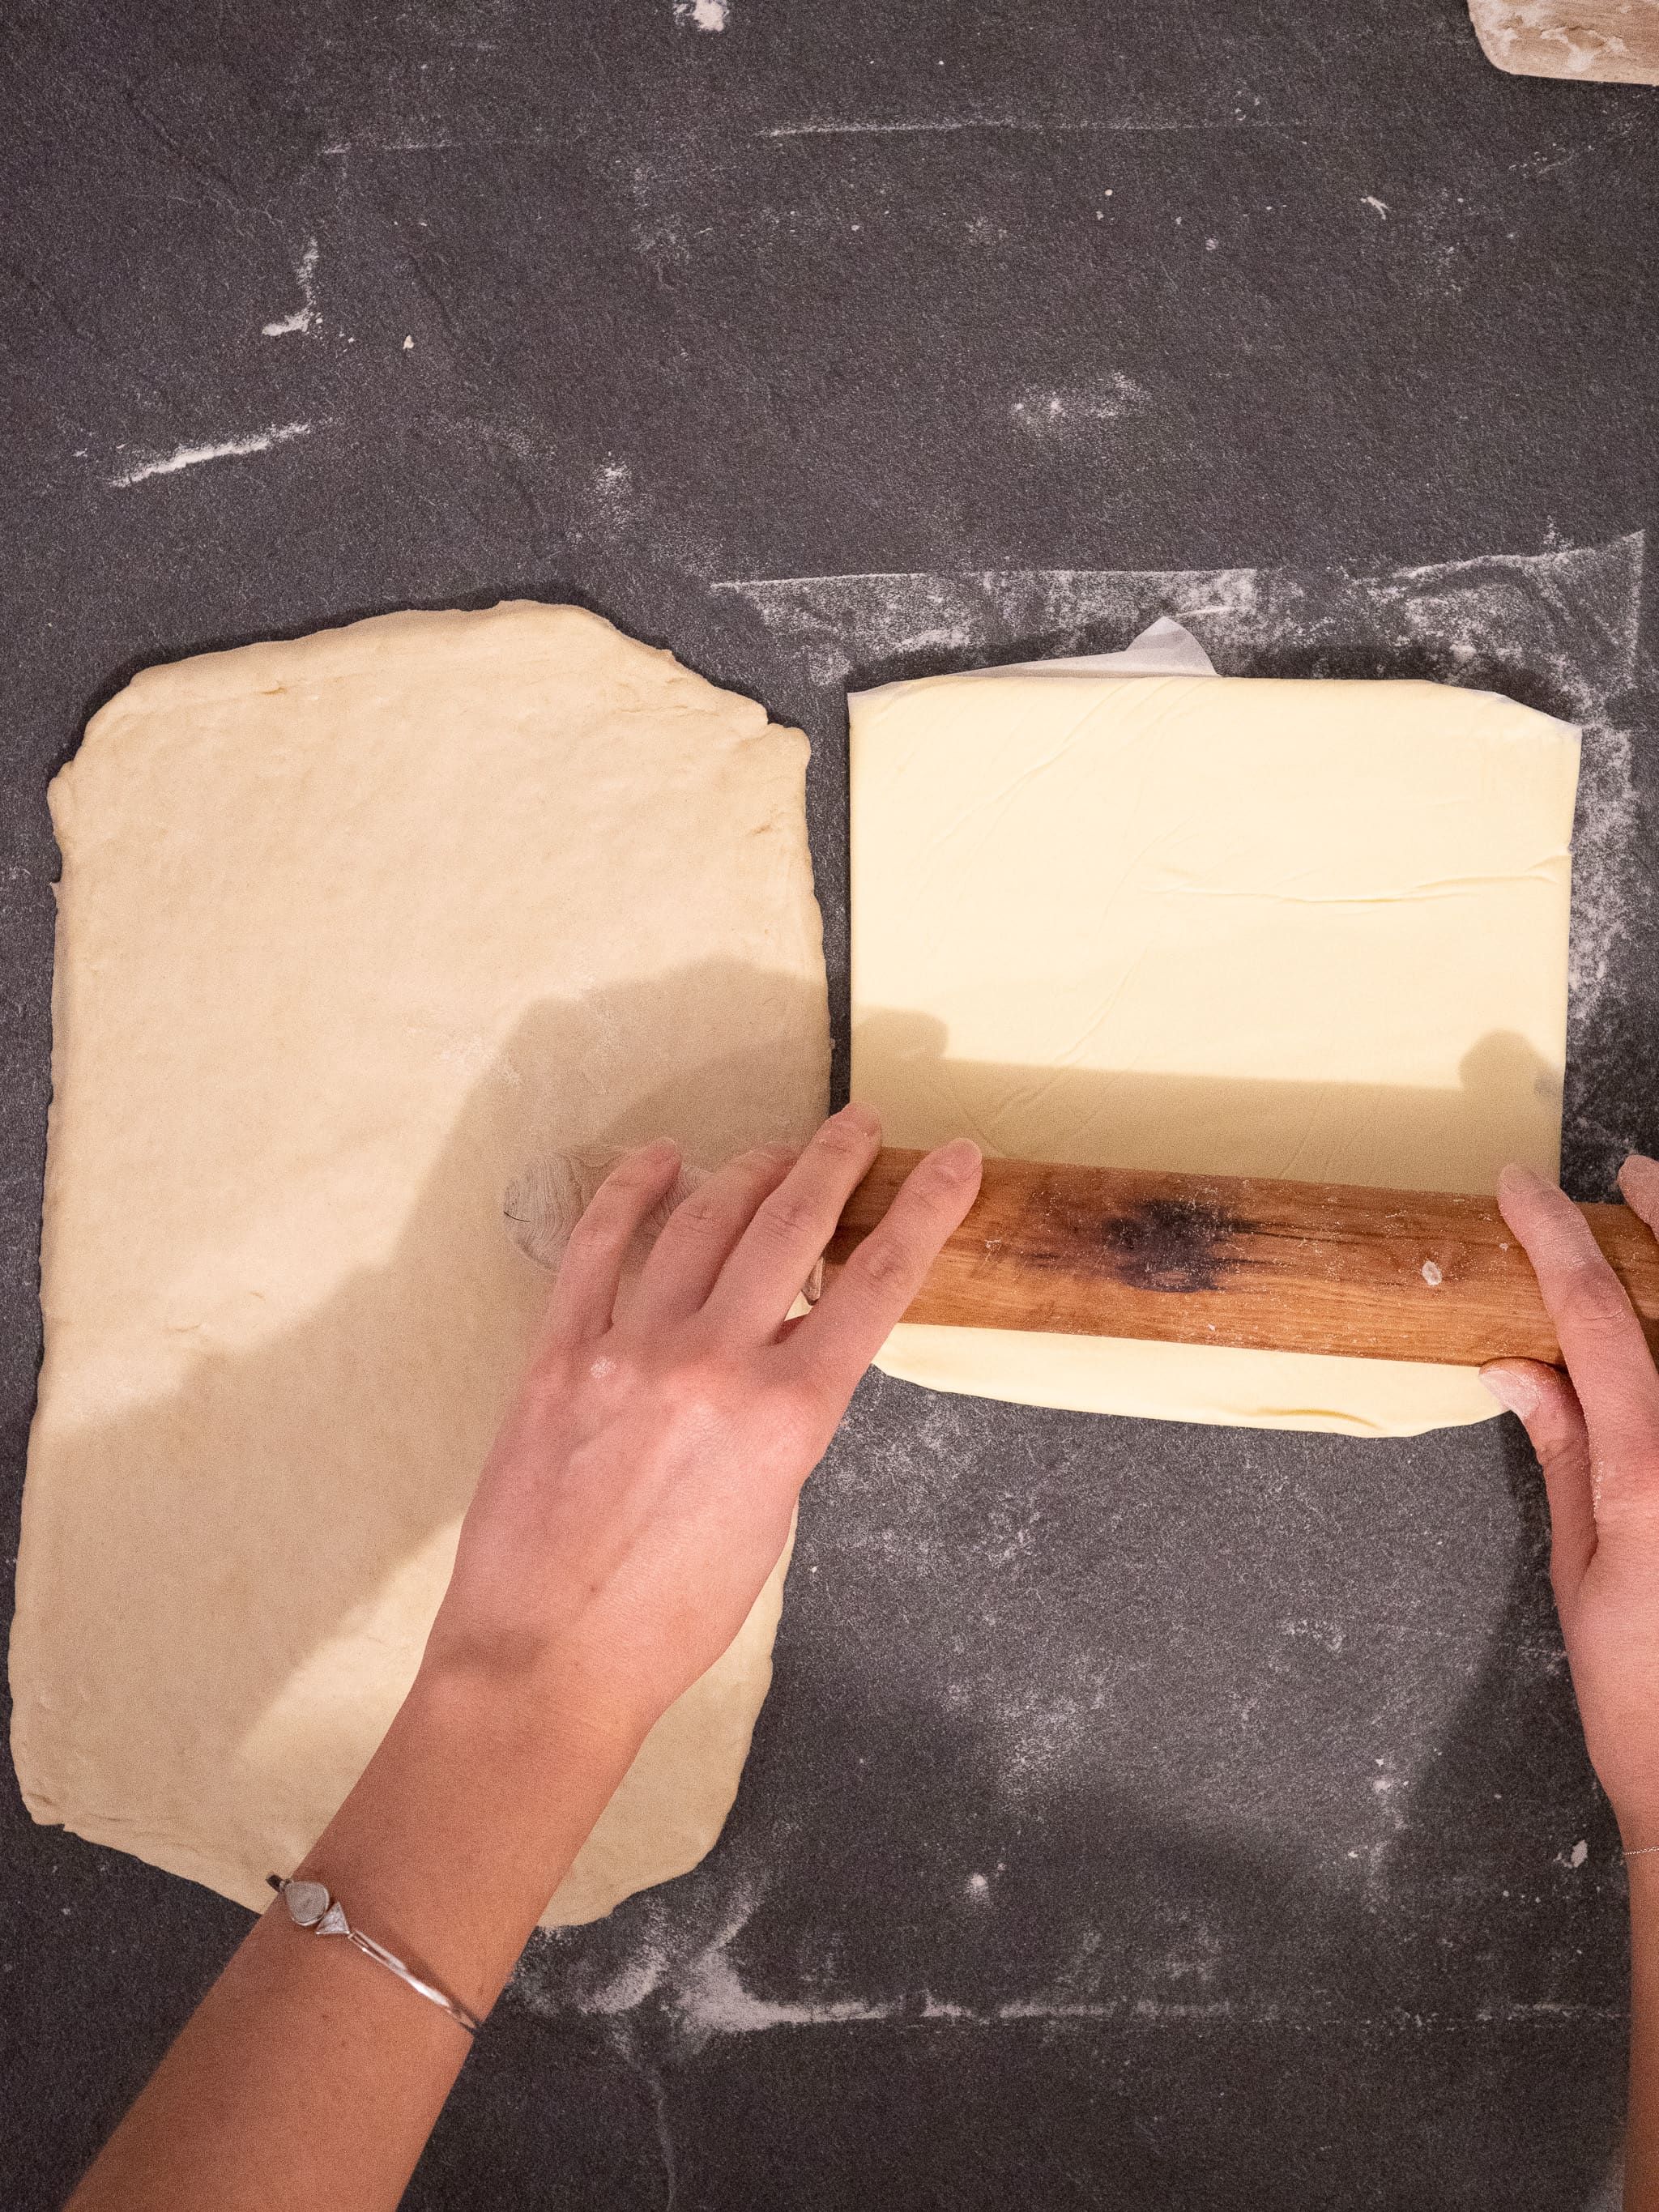 etaler la margarine dans le papier cuisson jusqu'à obtenir un beau carré régulier